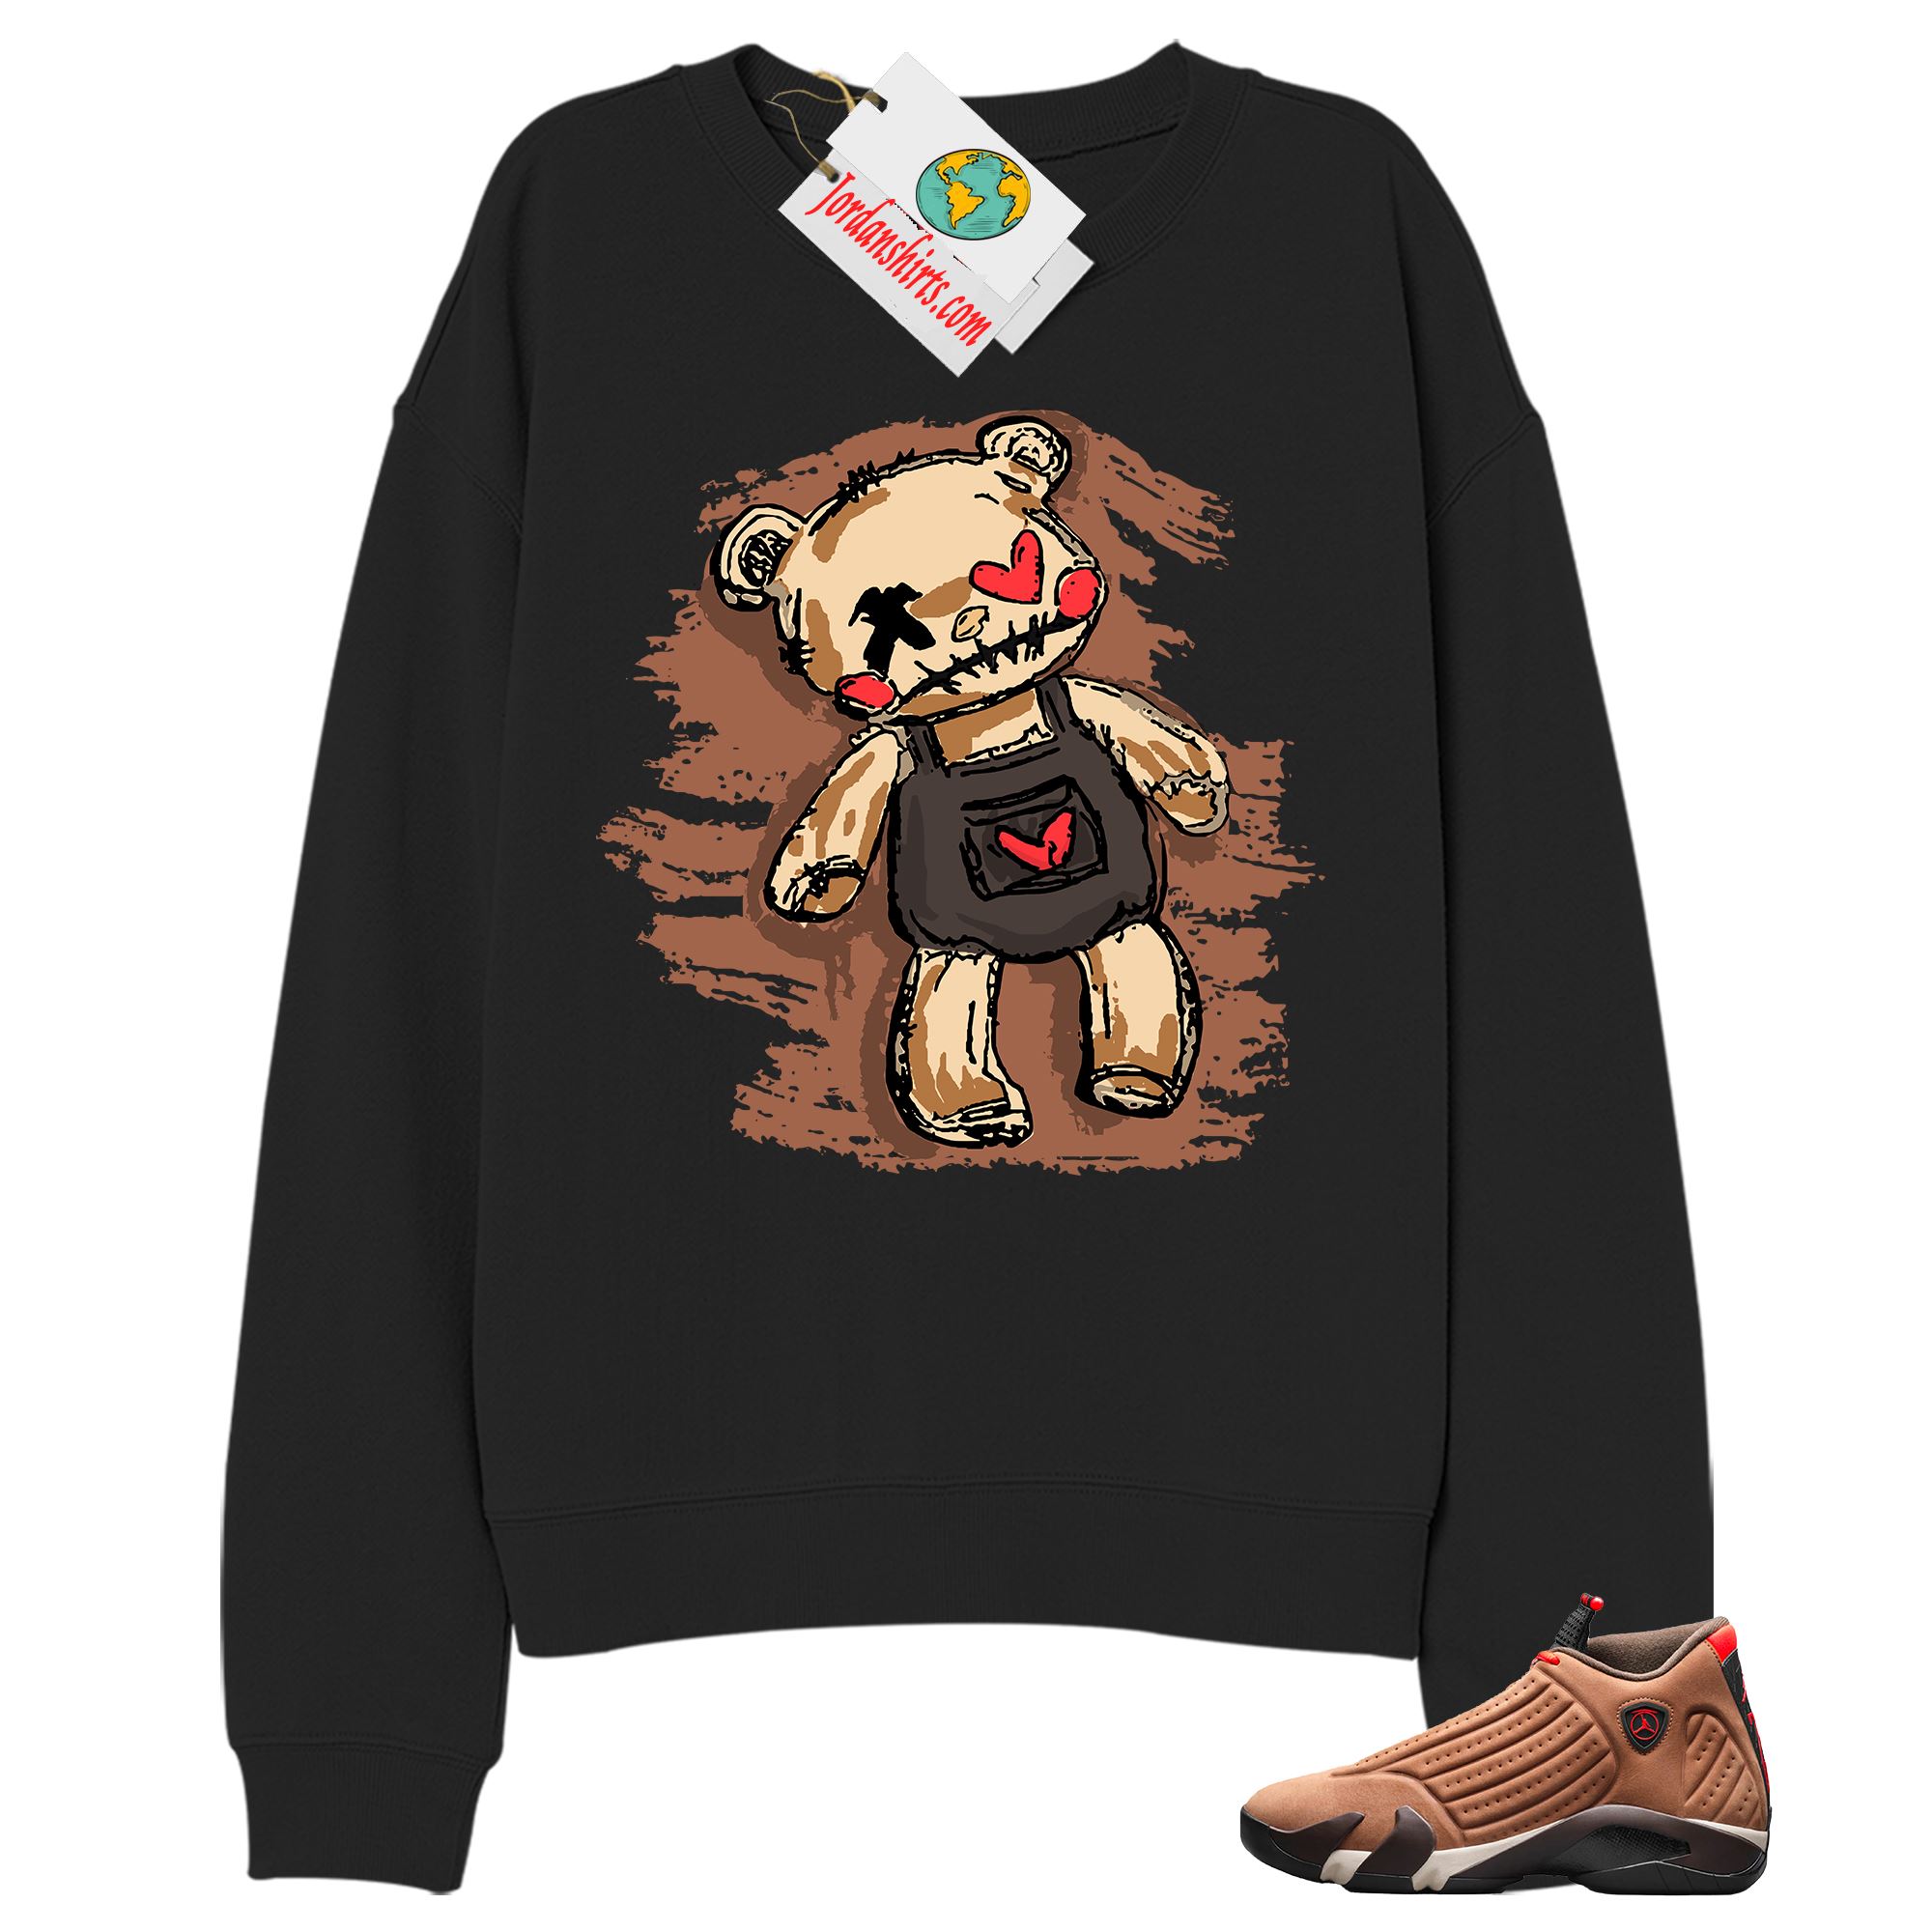 Jordan 14 Sweatshirt, Teddy Bear Broken Heart Black Sweatshirt Air Jordan 14 Winterized 14s Size Up To 5xl